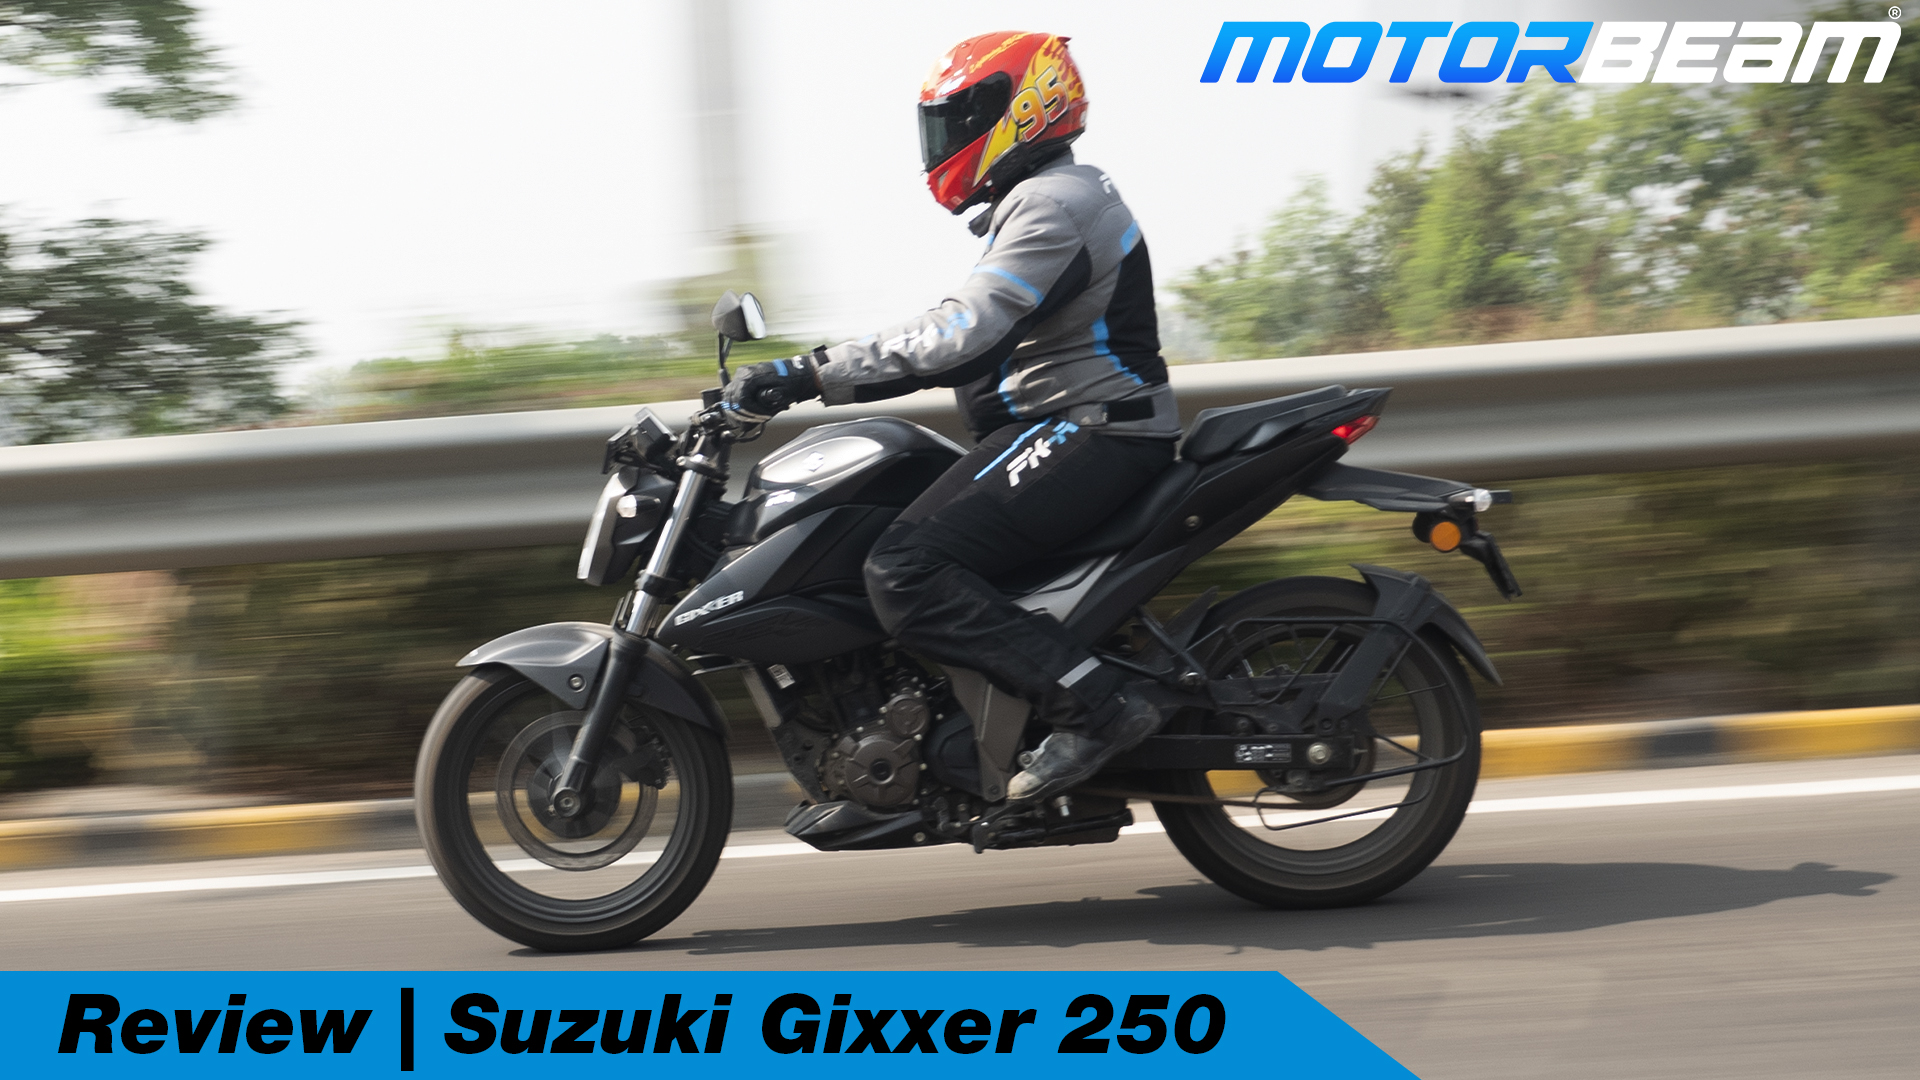 Suzuki Gixxer 250 Video Review